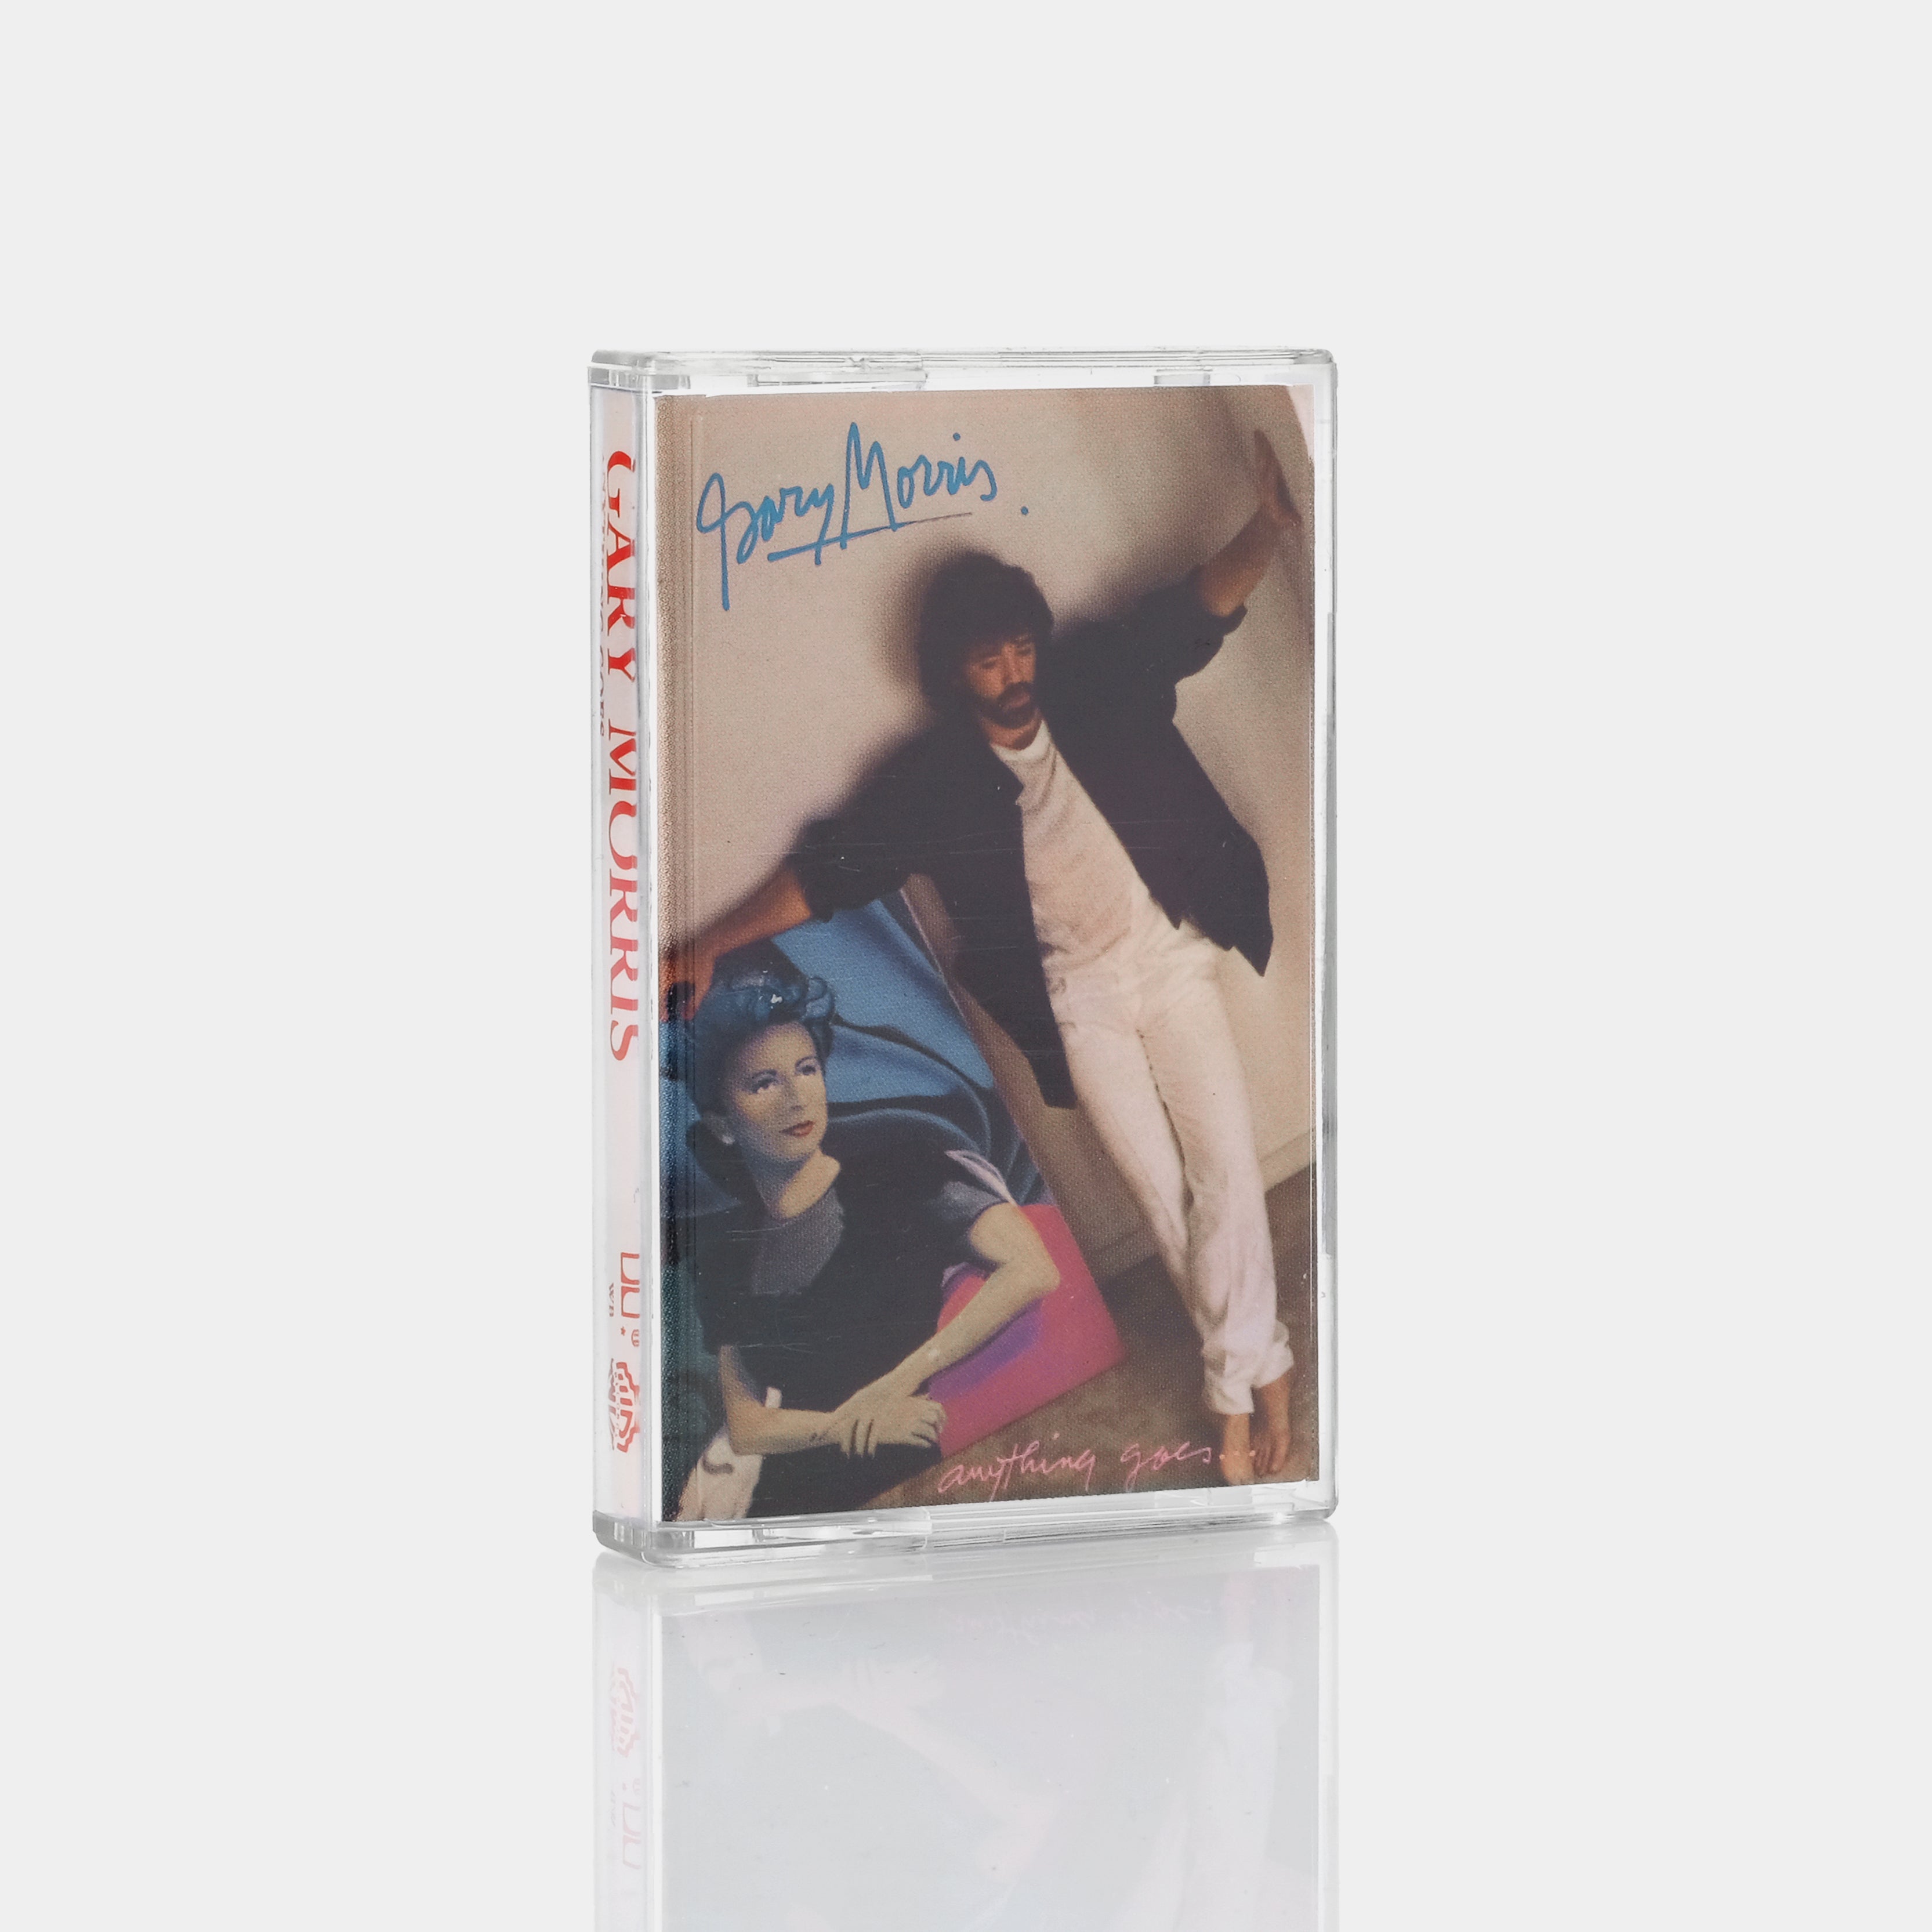 Gary Morris - Anything Goes Cassette Tape